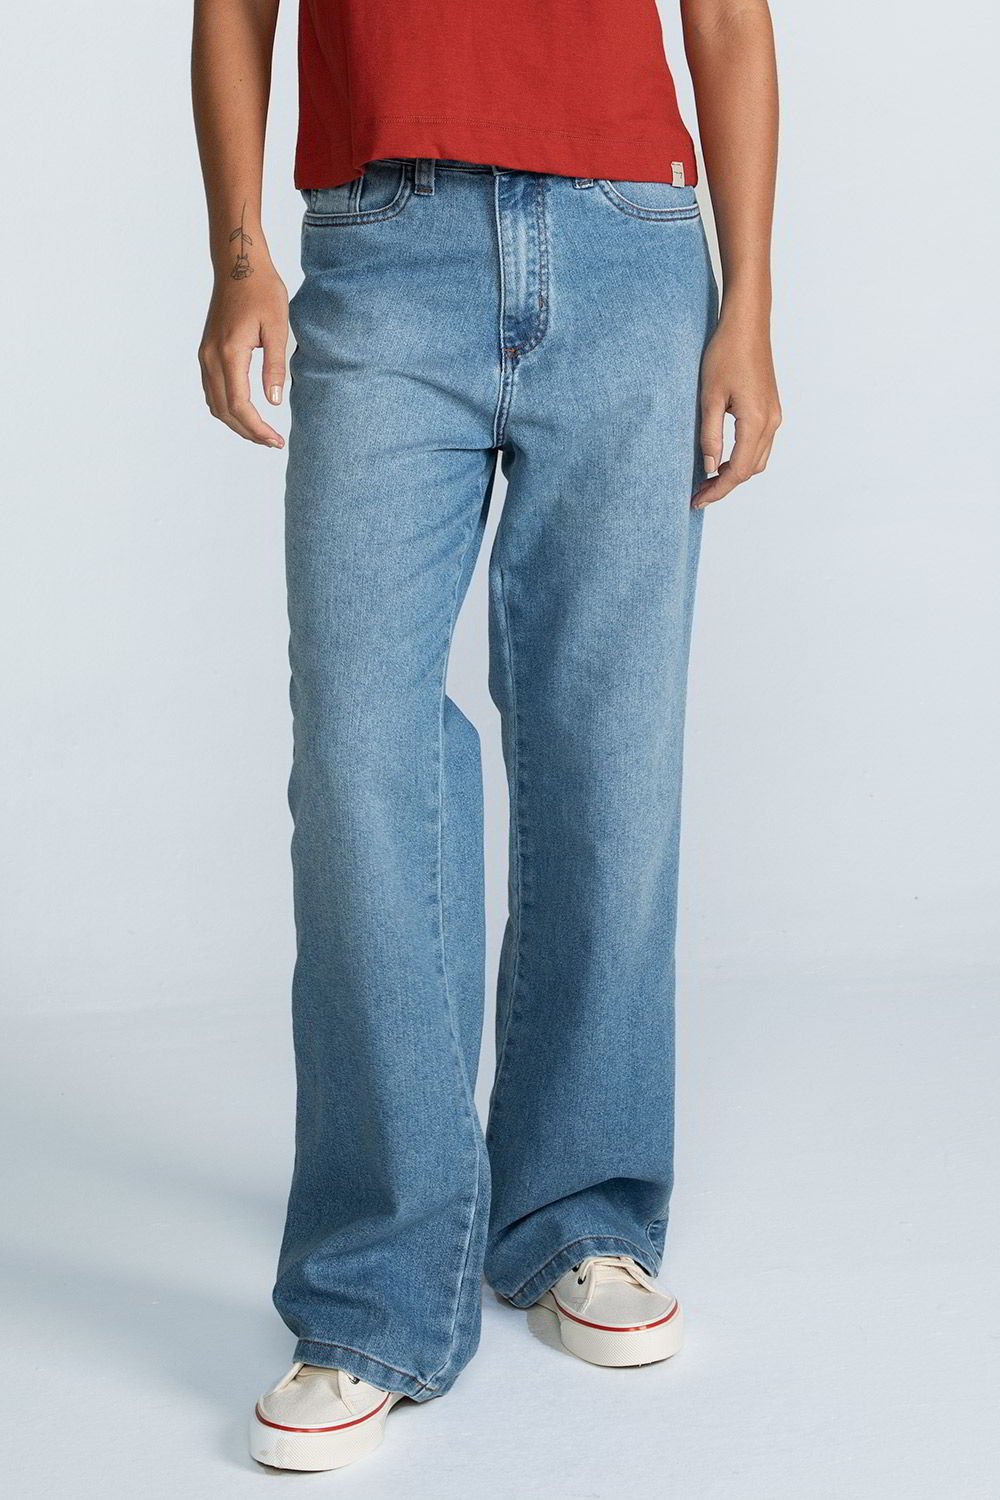 Calça wide leg jeans - Made In Guarda - Ecological Trend